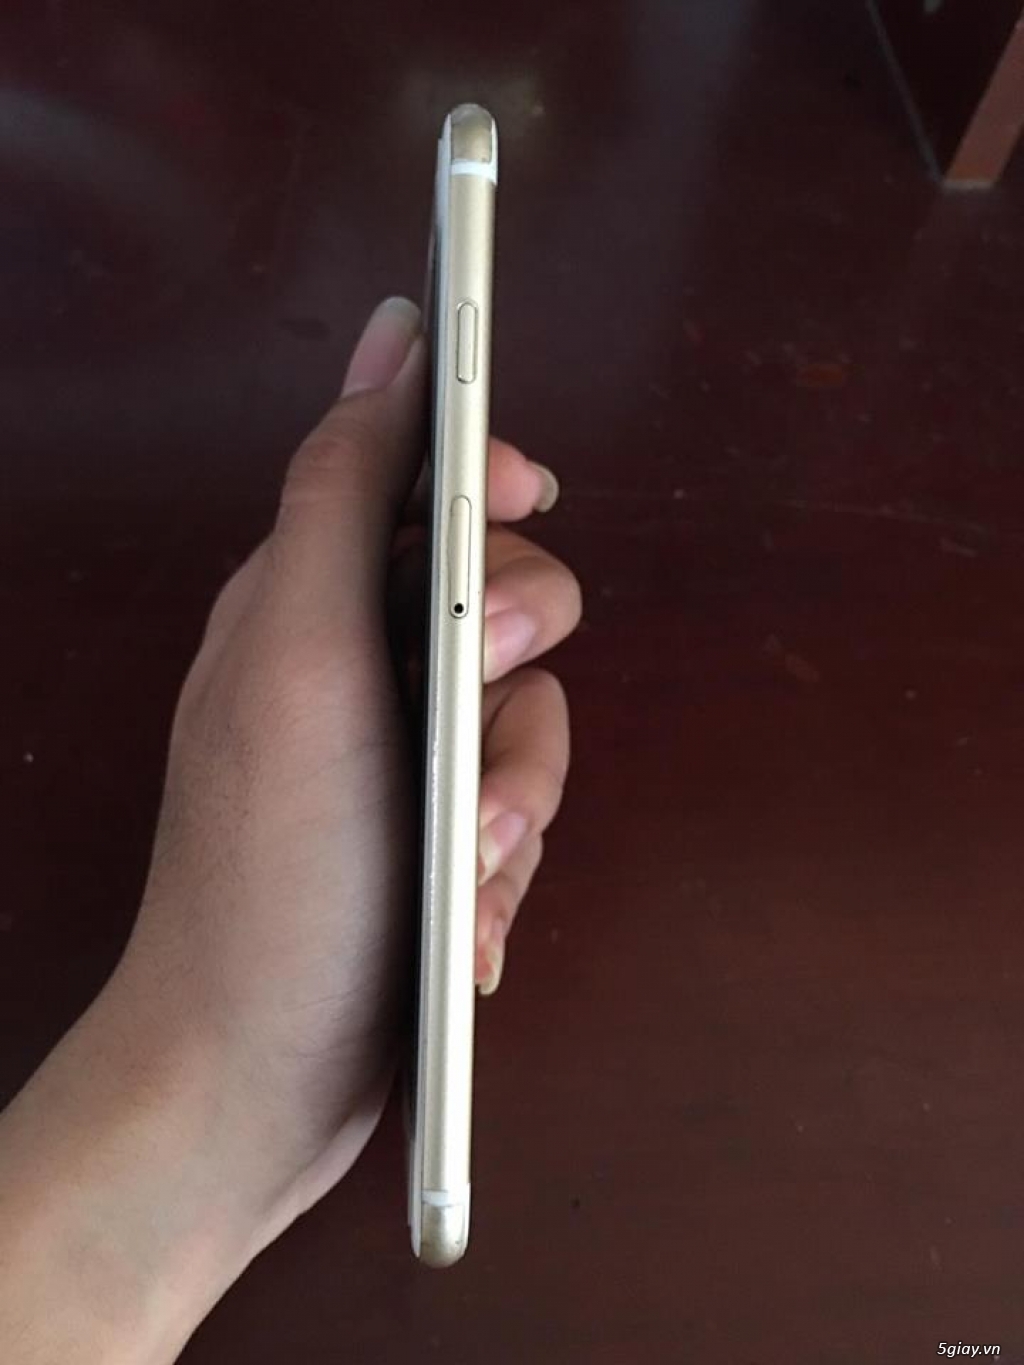 Iphone 6 plus Gold hàng Mỹ máy zin like new 99% (full phụ kiện) - 2